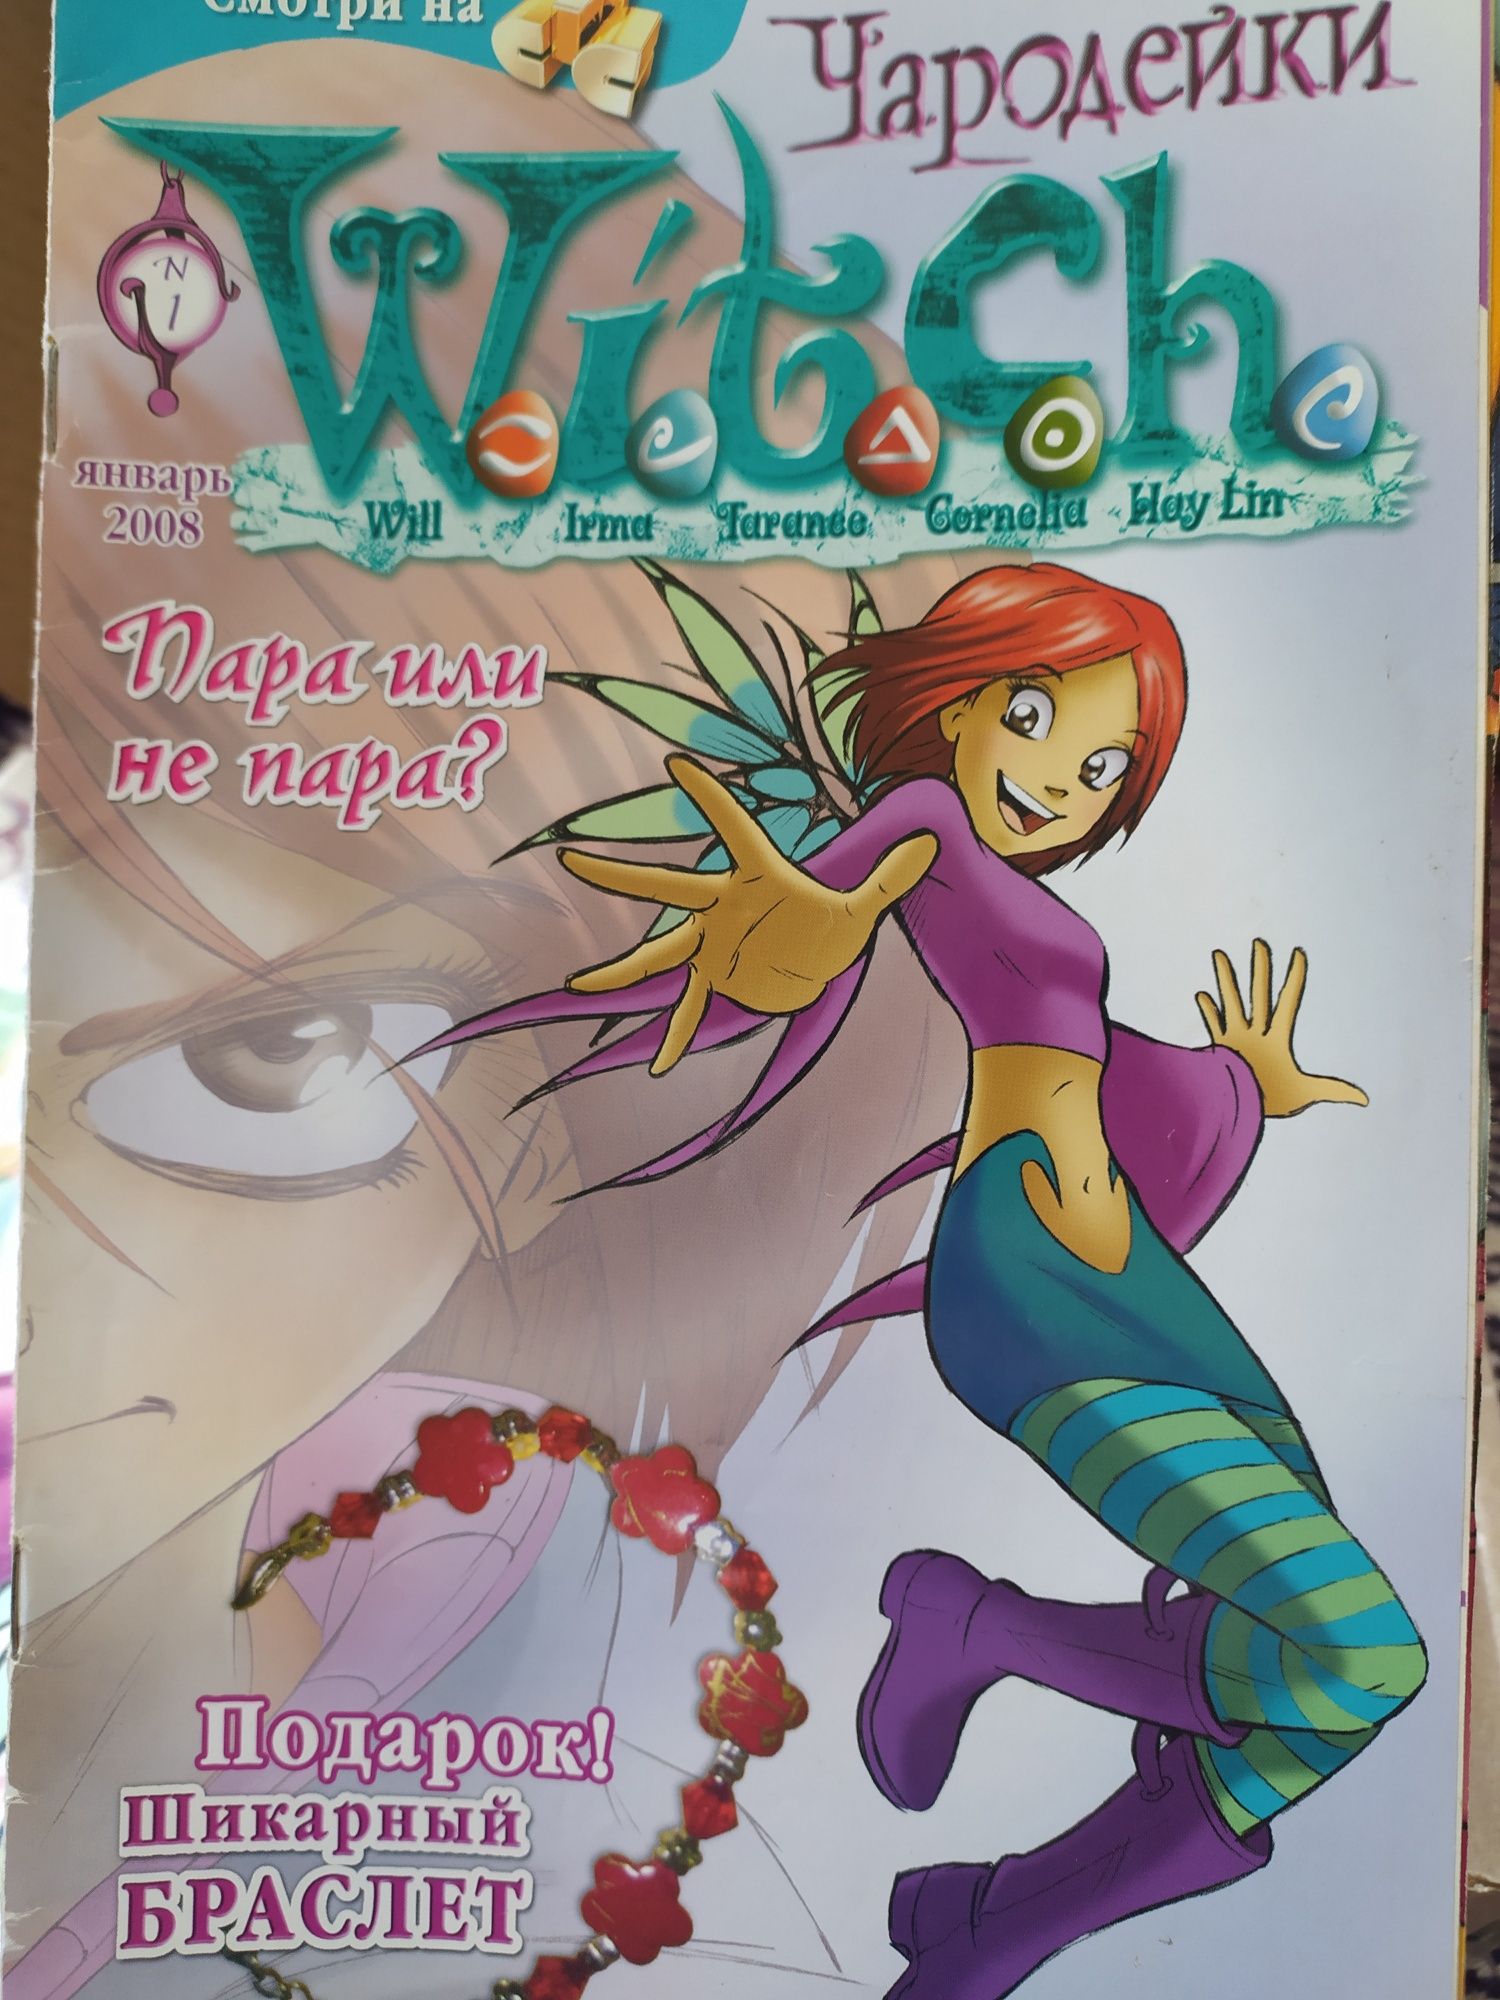 Журнал Чародейки Witch